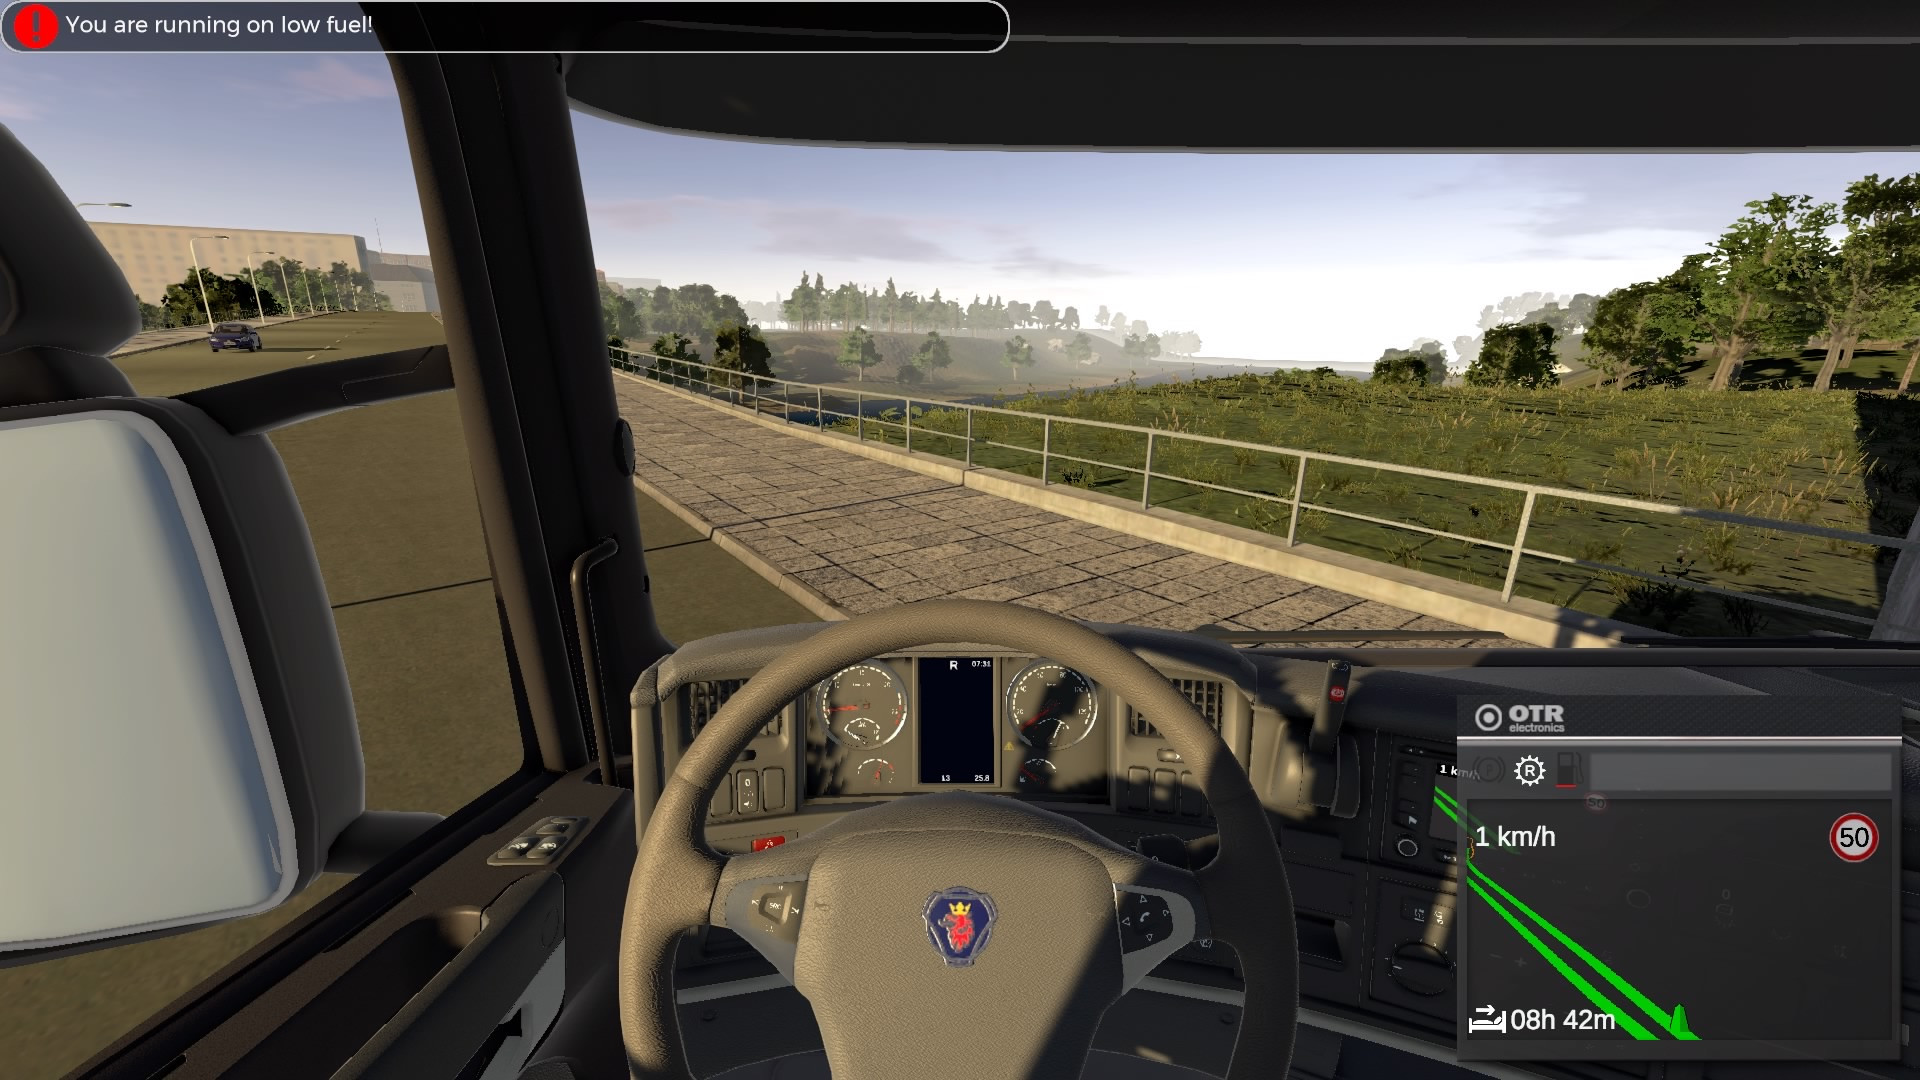 Jogo PS4 No Road Truck Simulator